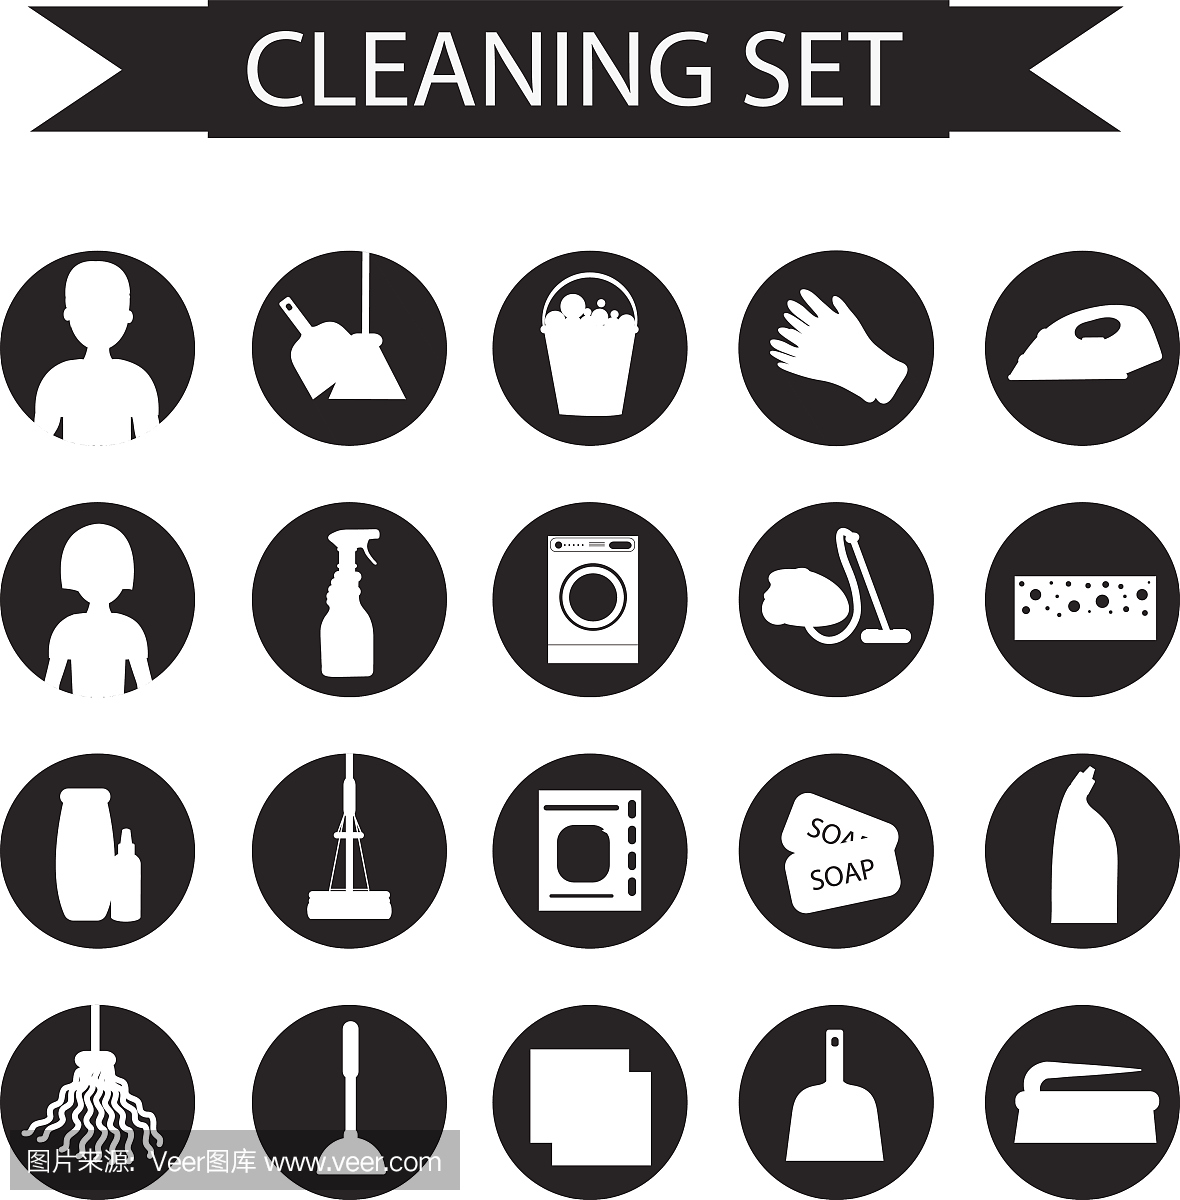 清洁工具的一组图标。打扫屋子。清洁用品。